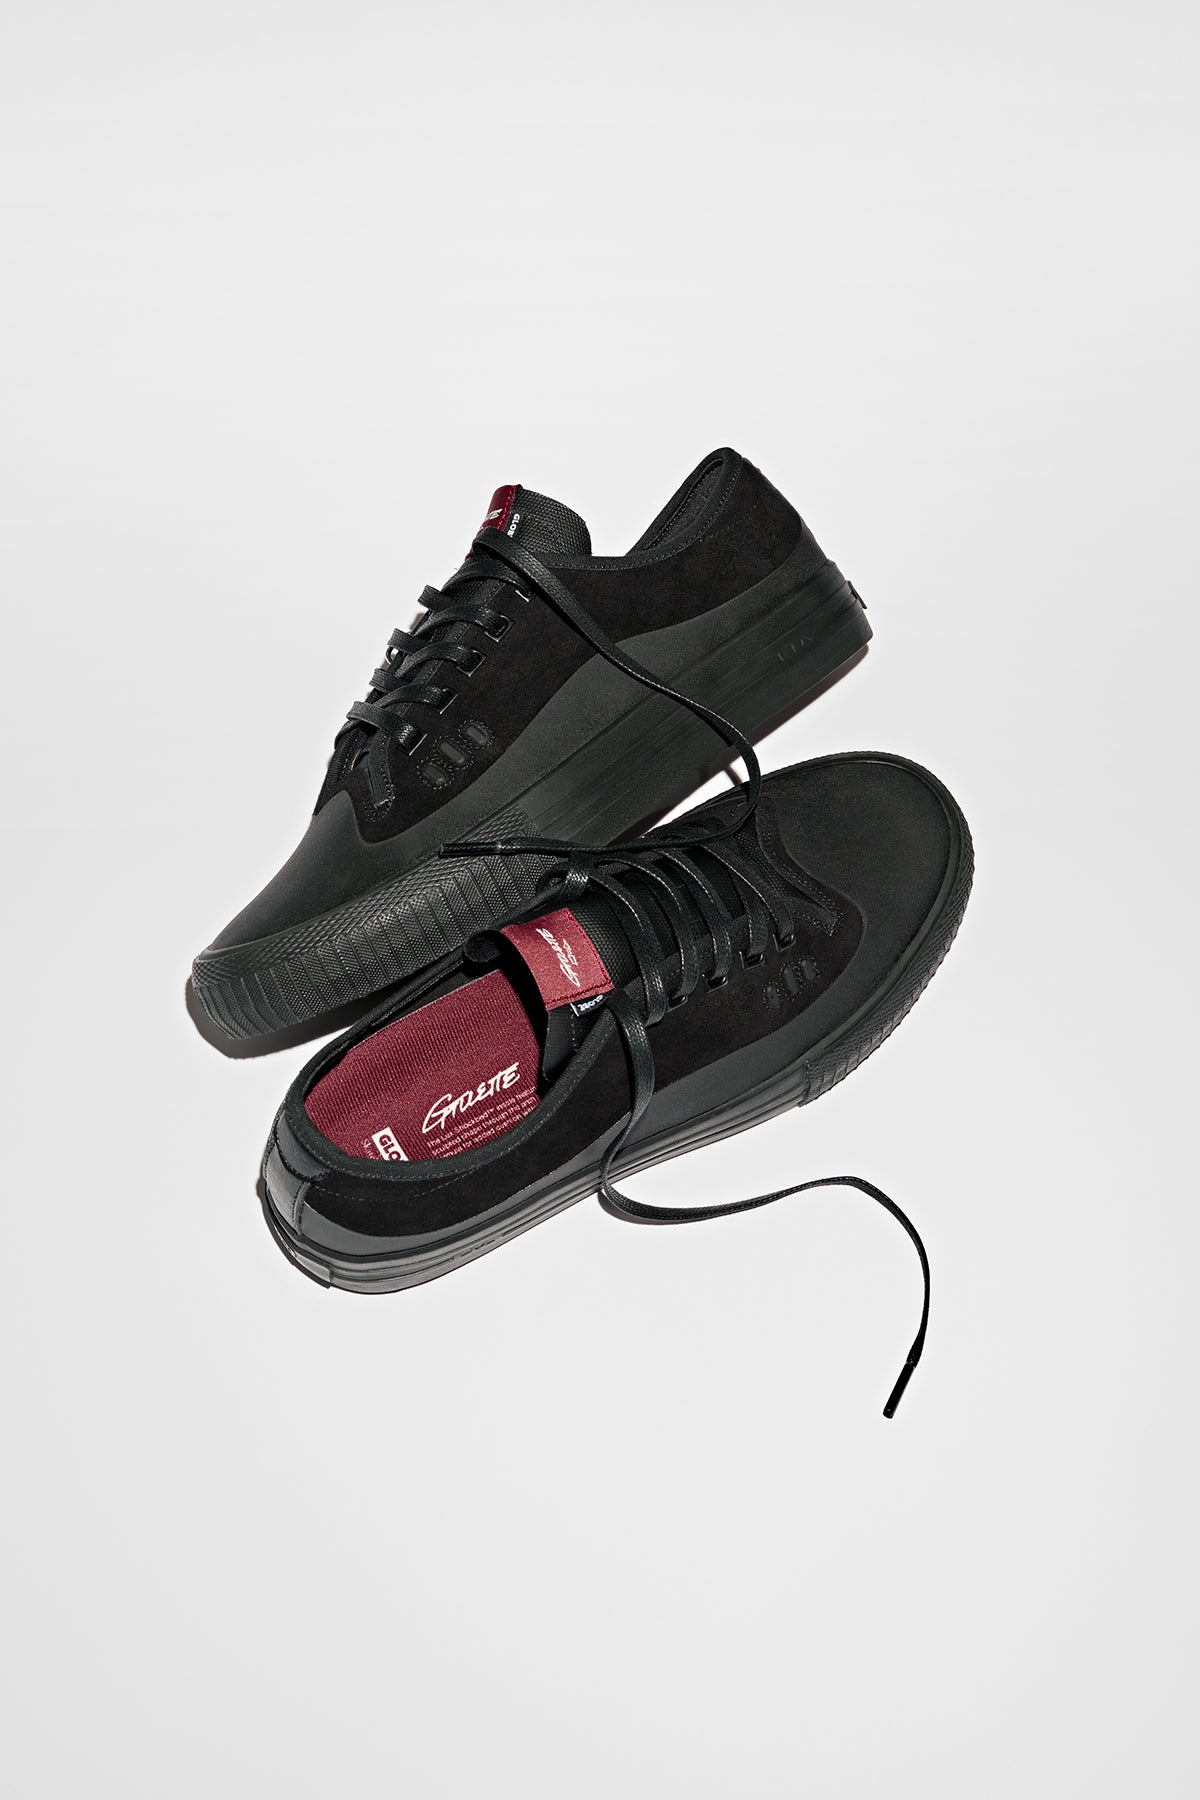 Globe - Gillette - Black/Black Gamuza - skateboard Zapatos